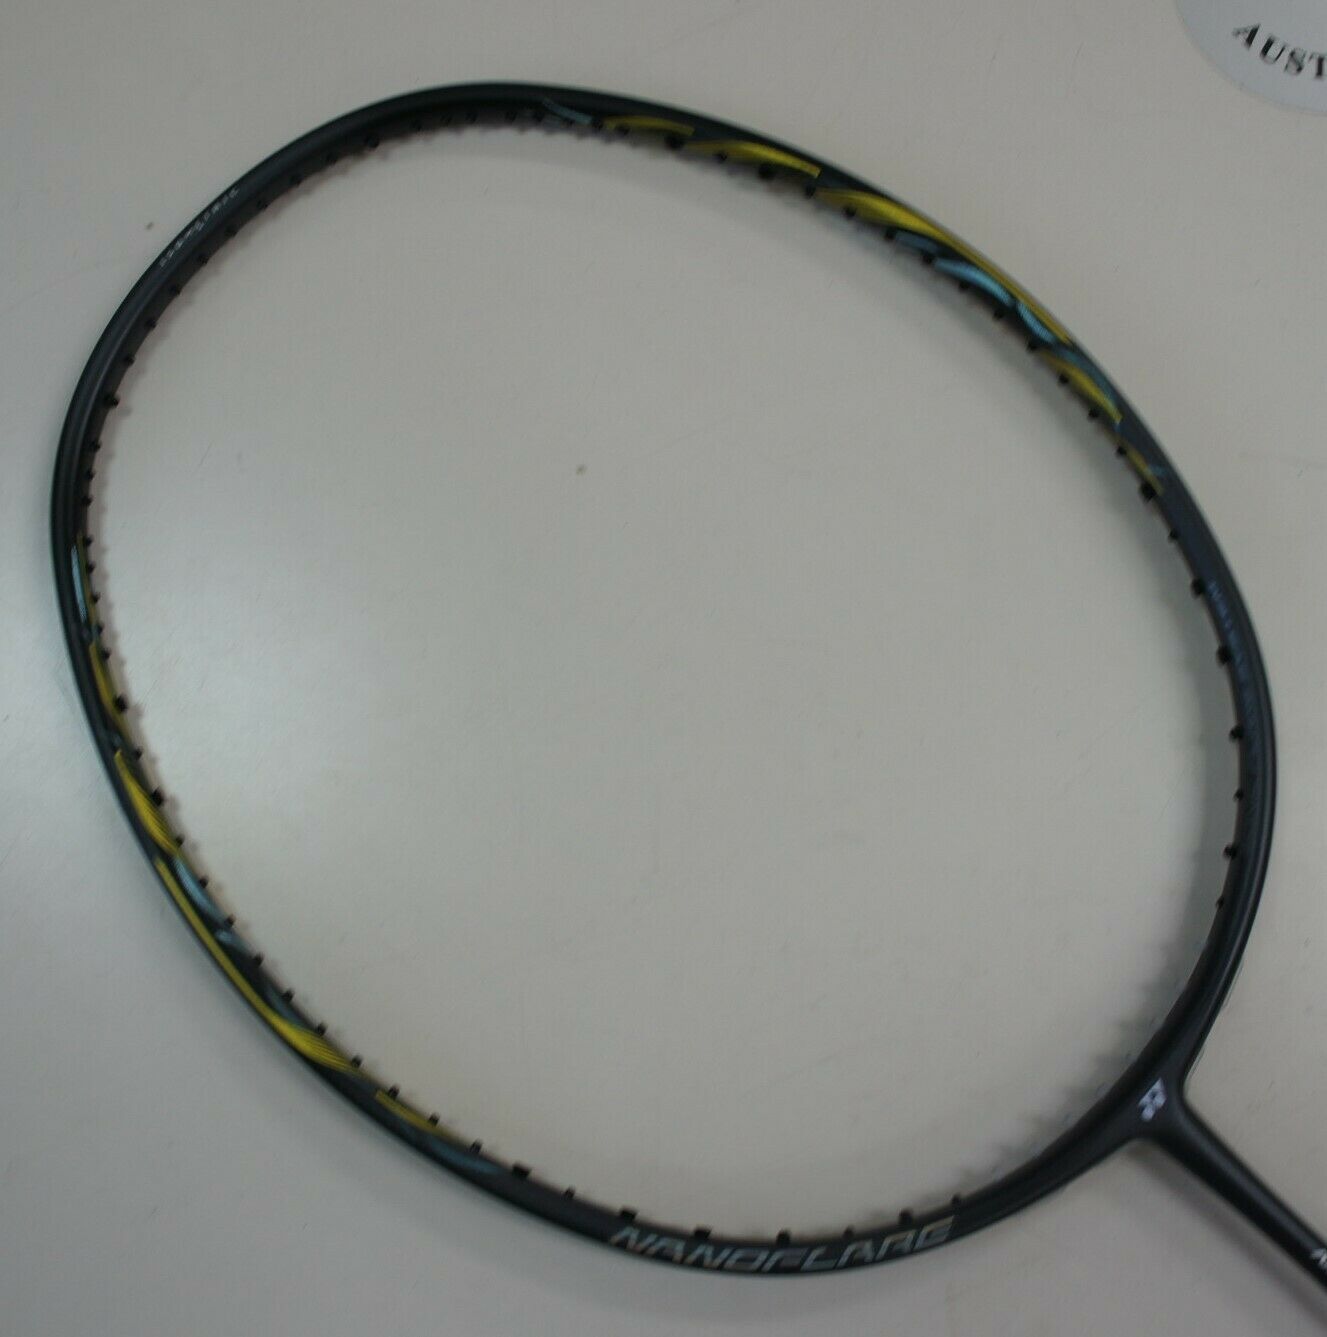 YONEX Nanoflare 800LT Badminton Racquet 5UG5 NF800LT Unstrung, Calibre